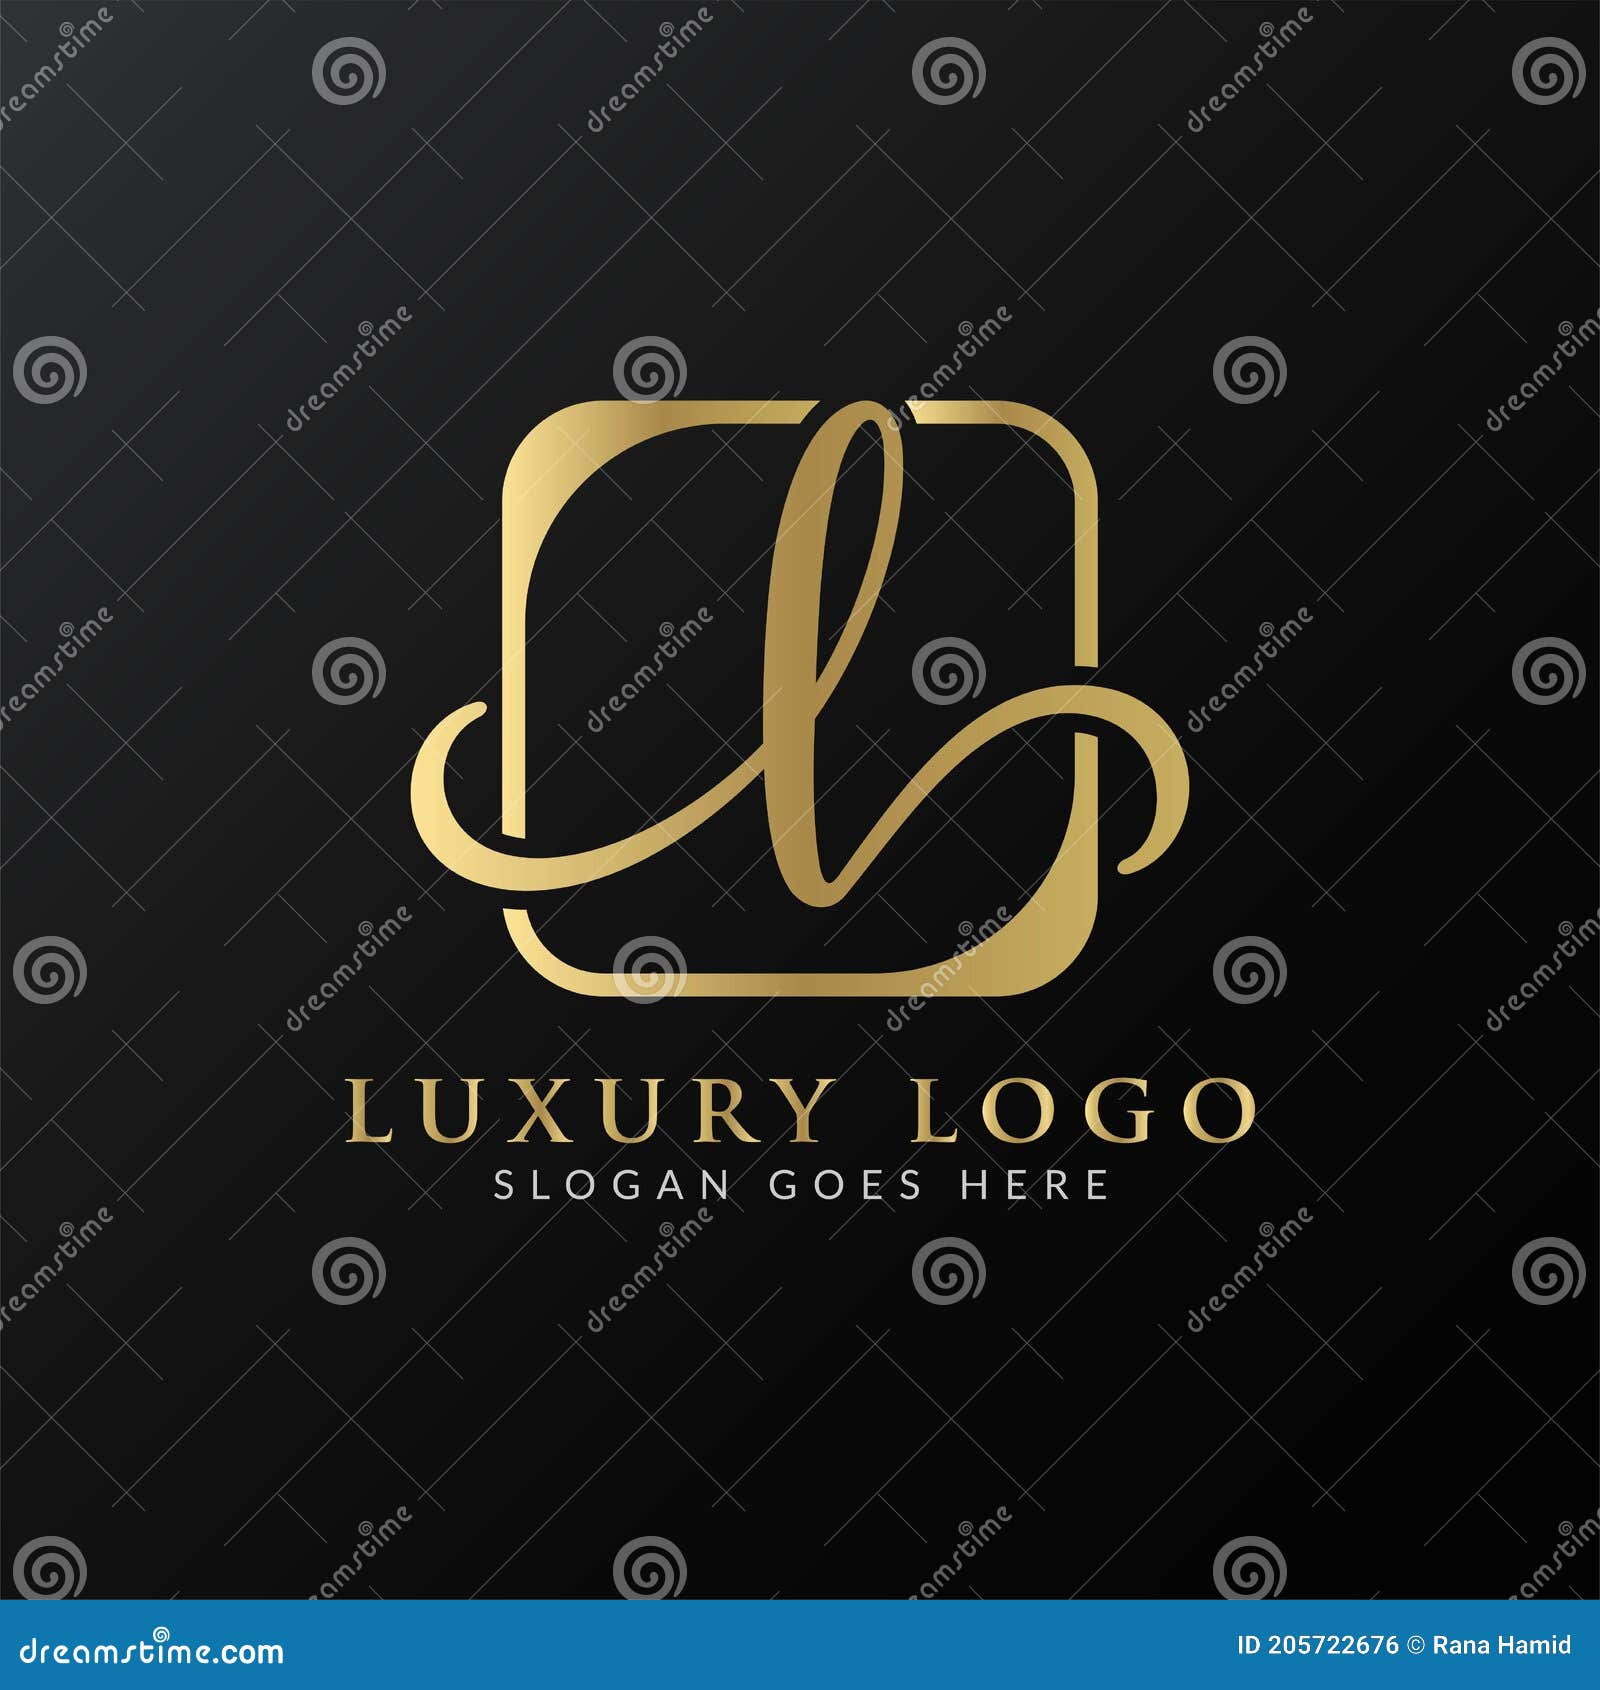 Initial Letter Logo Design Vector Template Luxury Letter Logo